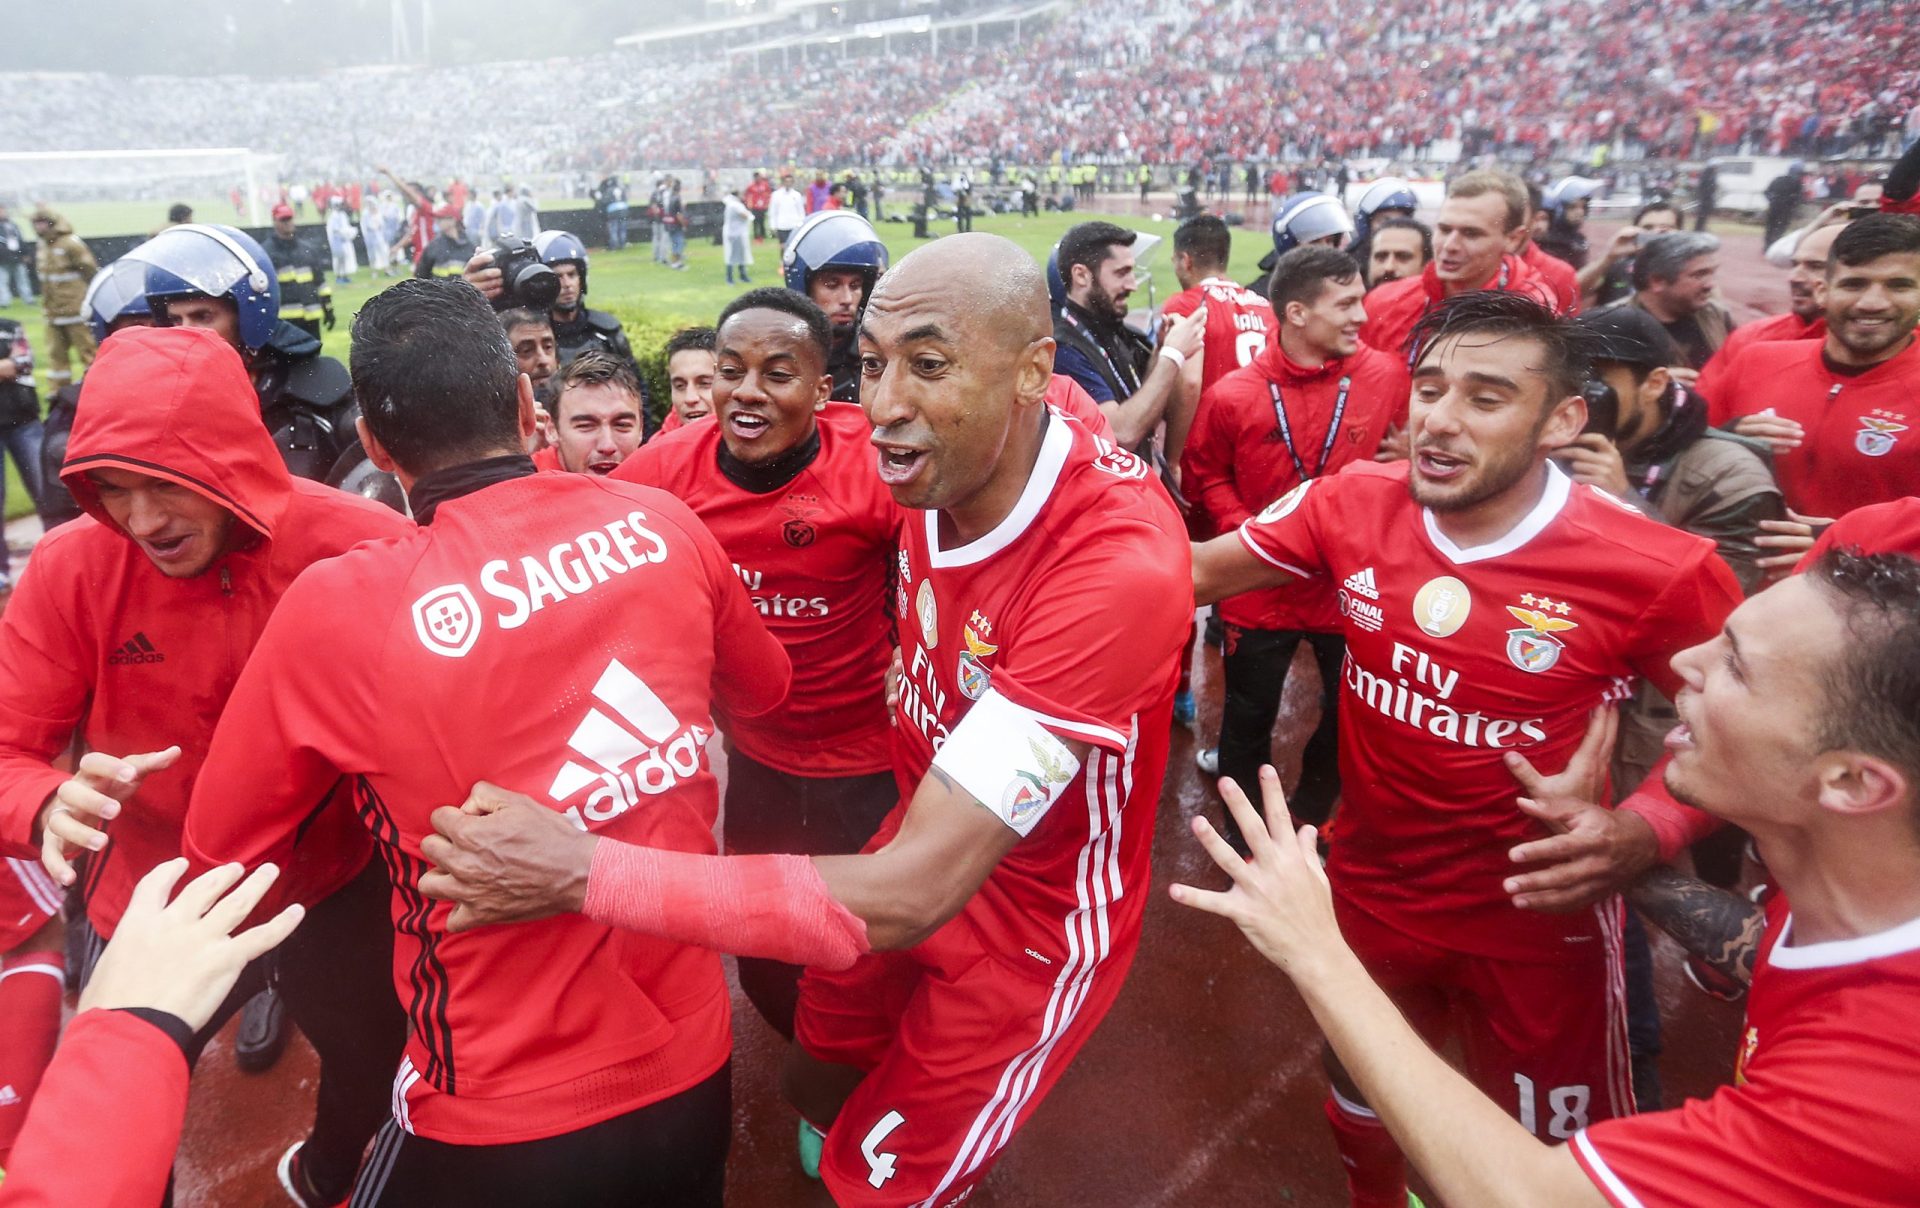 “Mina de ouro” do Benfica em destaque em Espanha